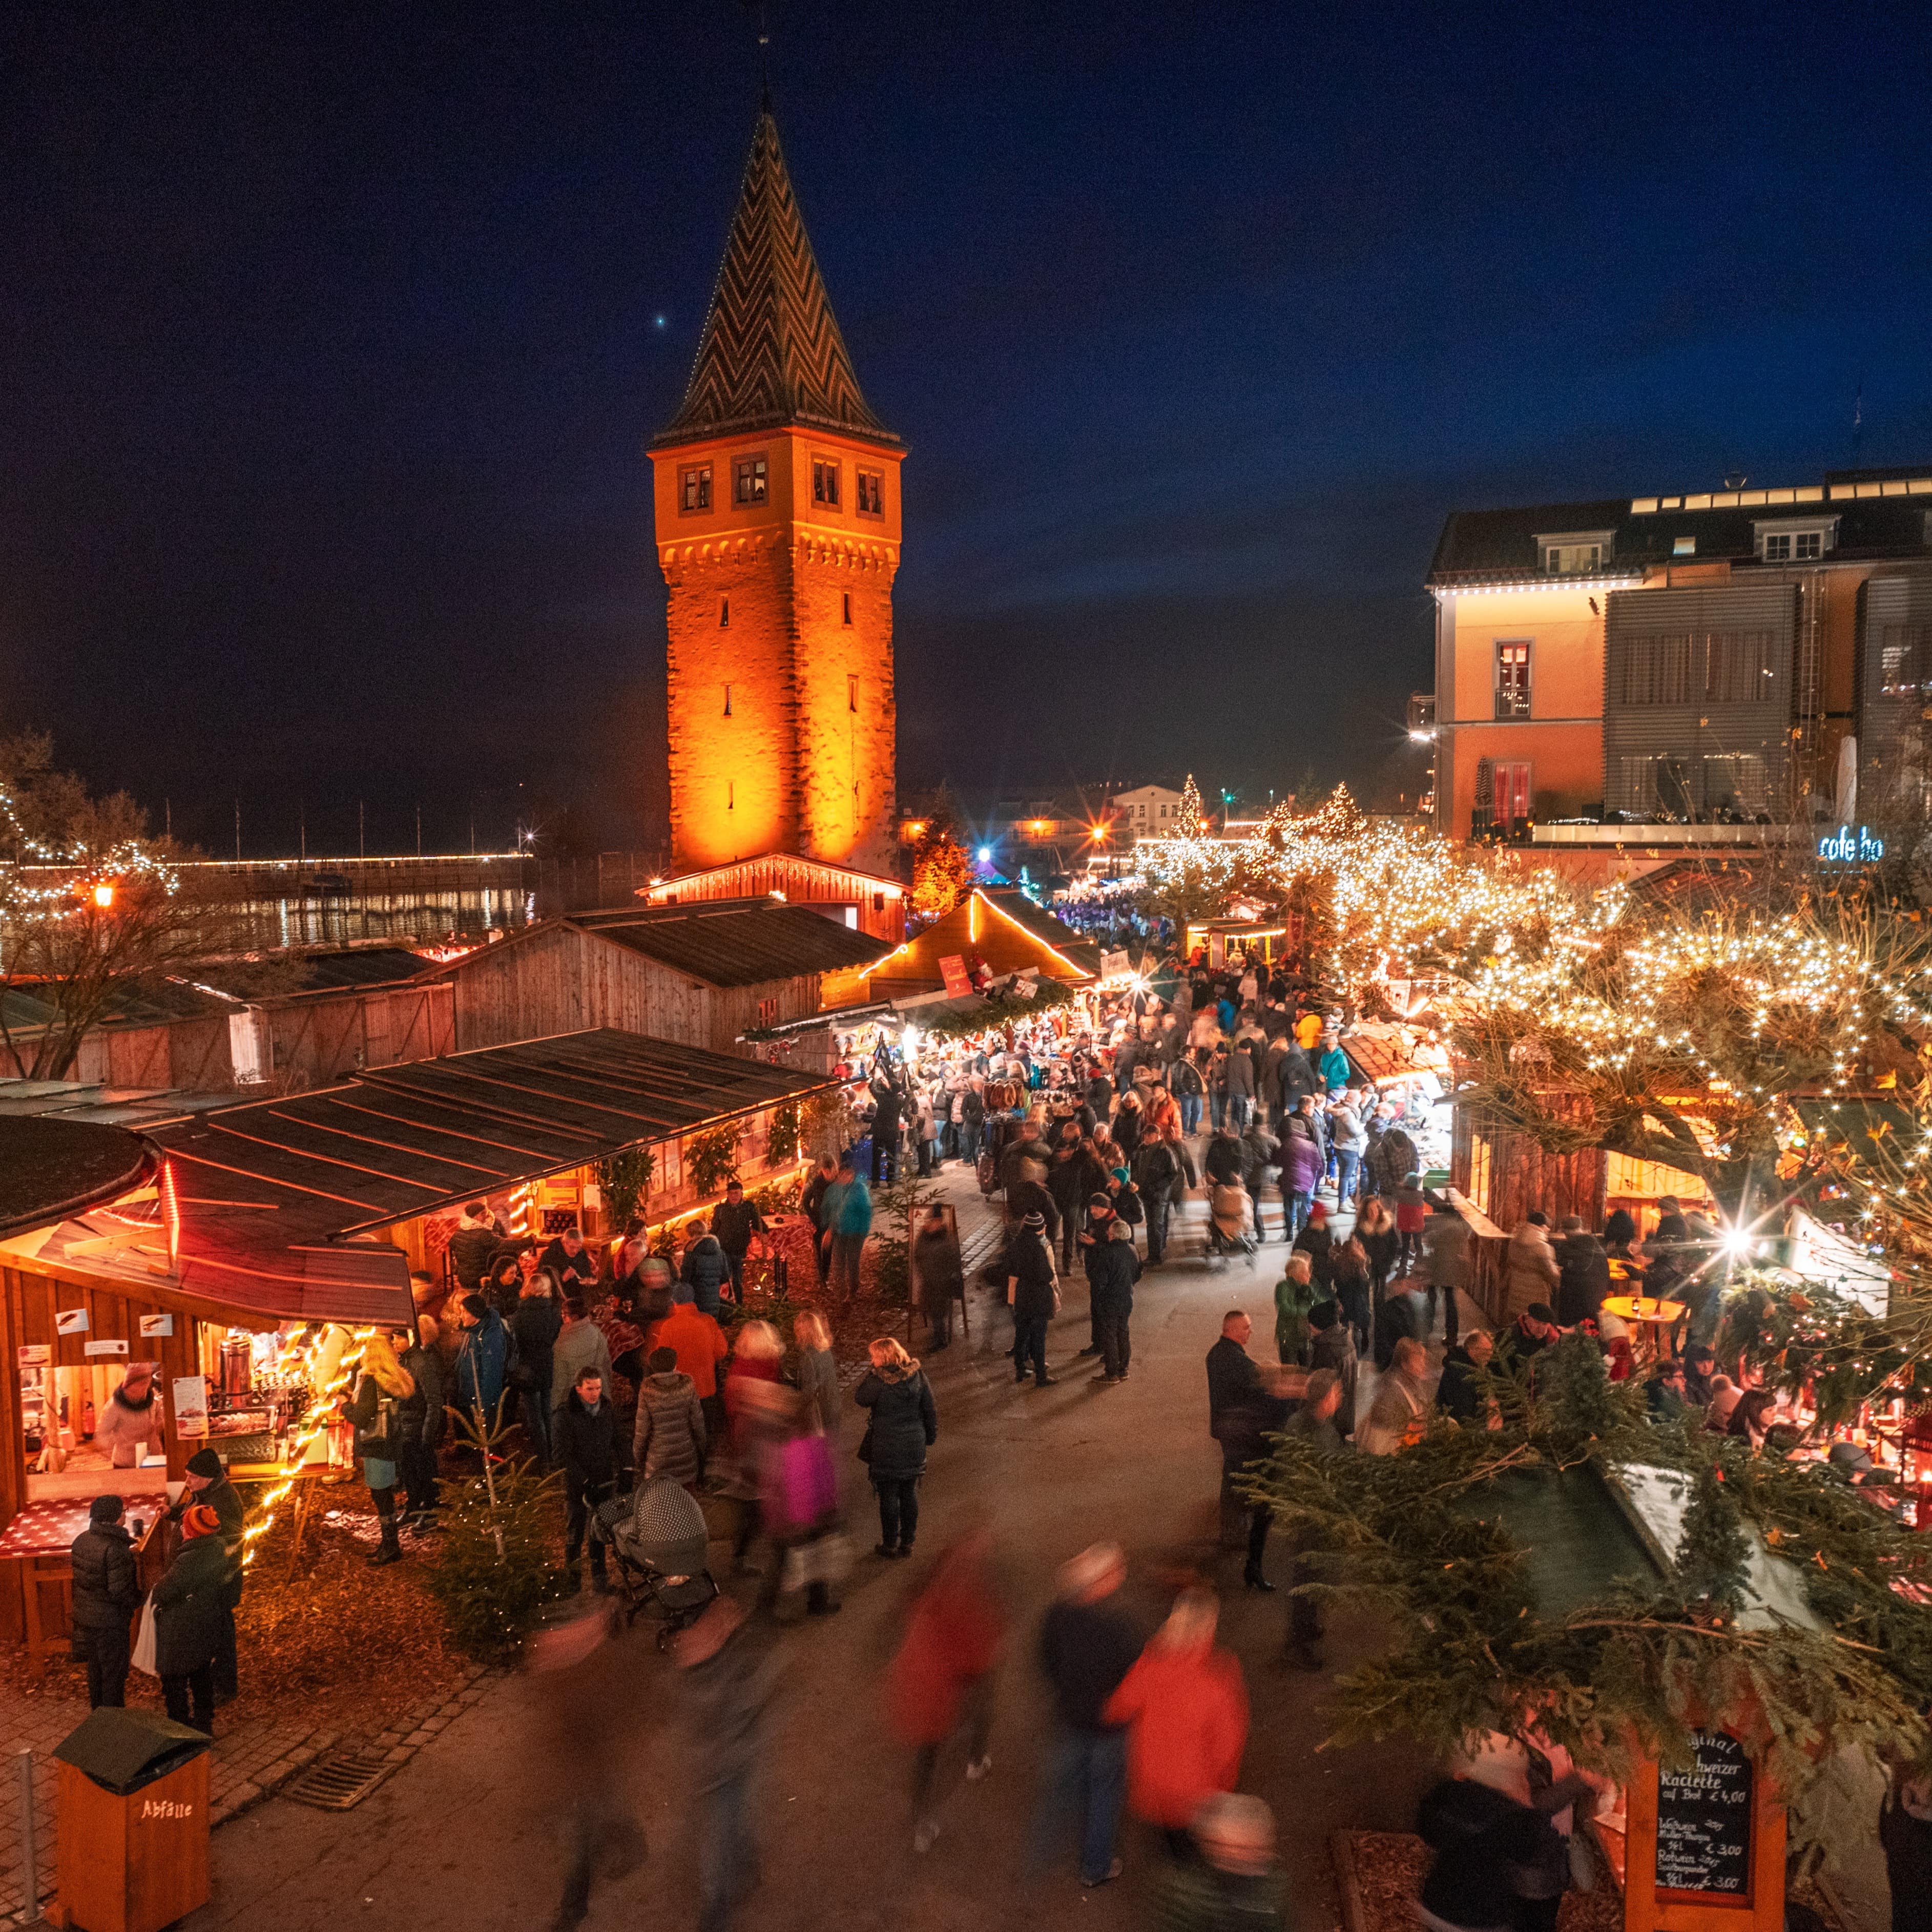 Hell erleuchteter Weihnachtsmarkt am Lindauer Hafen am Abend. Viele Leute laufen an den Ständen vorbei.